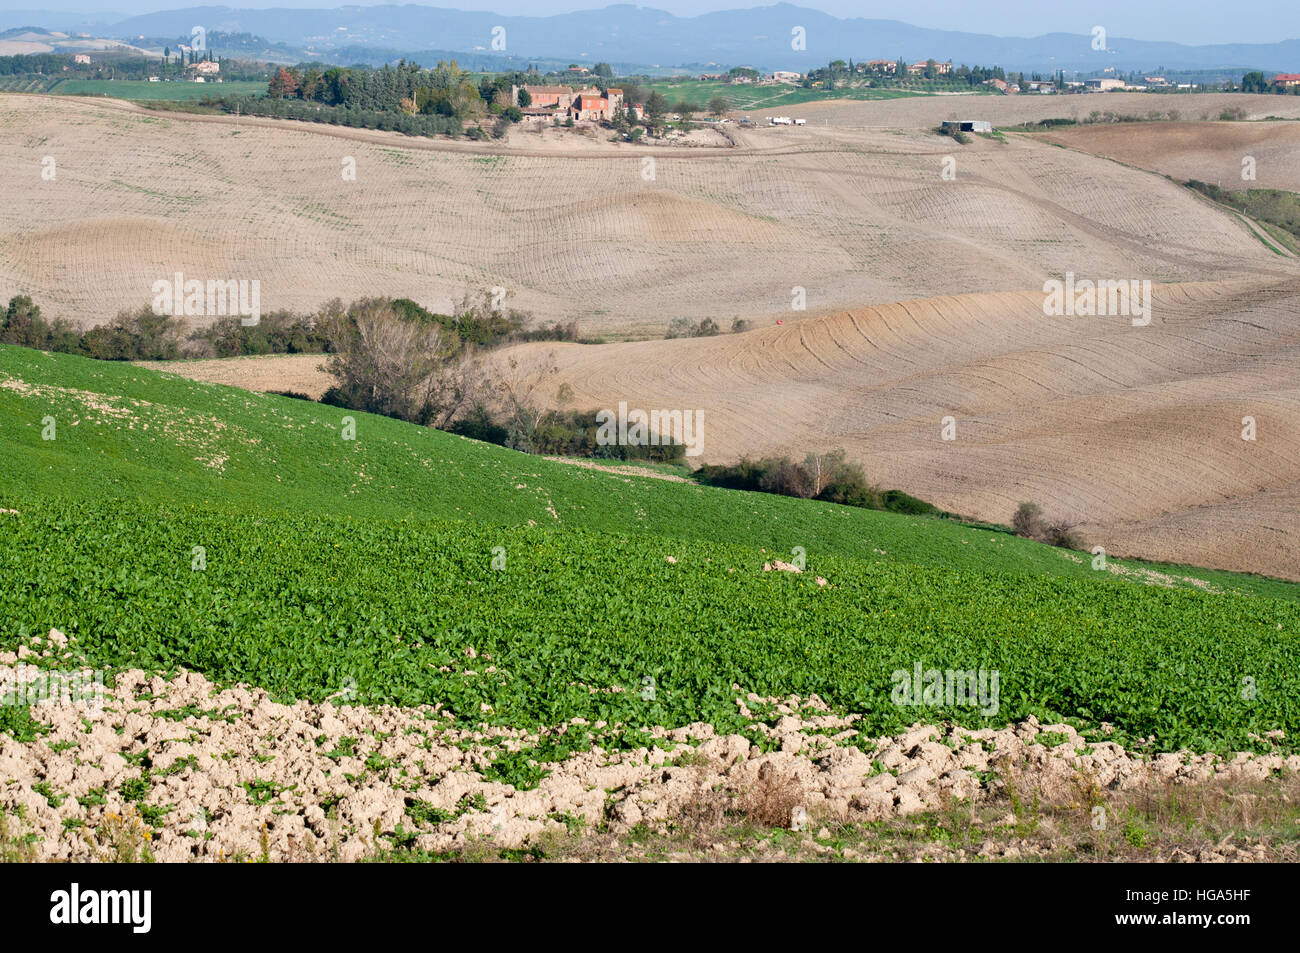 Vue sur les champs cultivés dans la région des Crete Senesi en Toscane de l'Italie centrale Banque D'Images